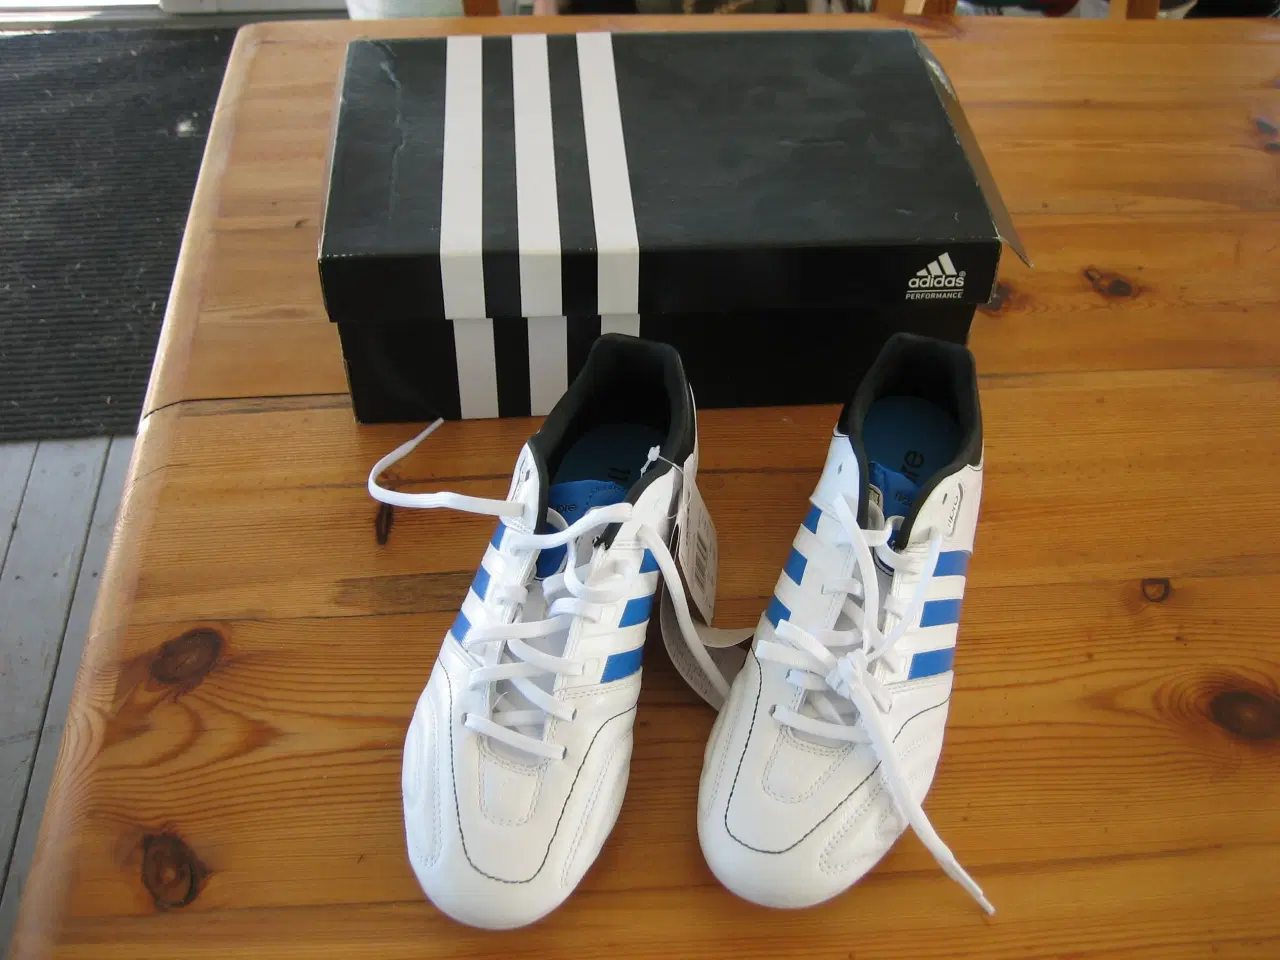 Billede 1 - Adidas 11core TRX fg fodboldstøvler